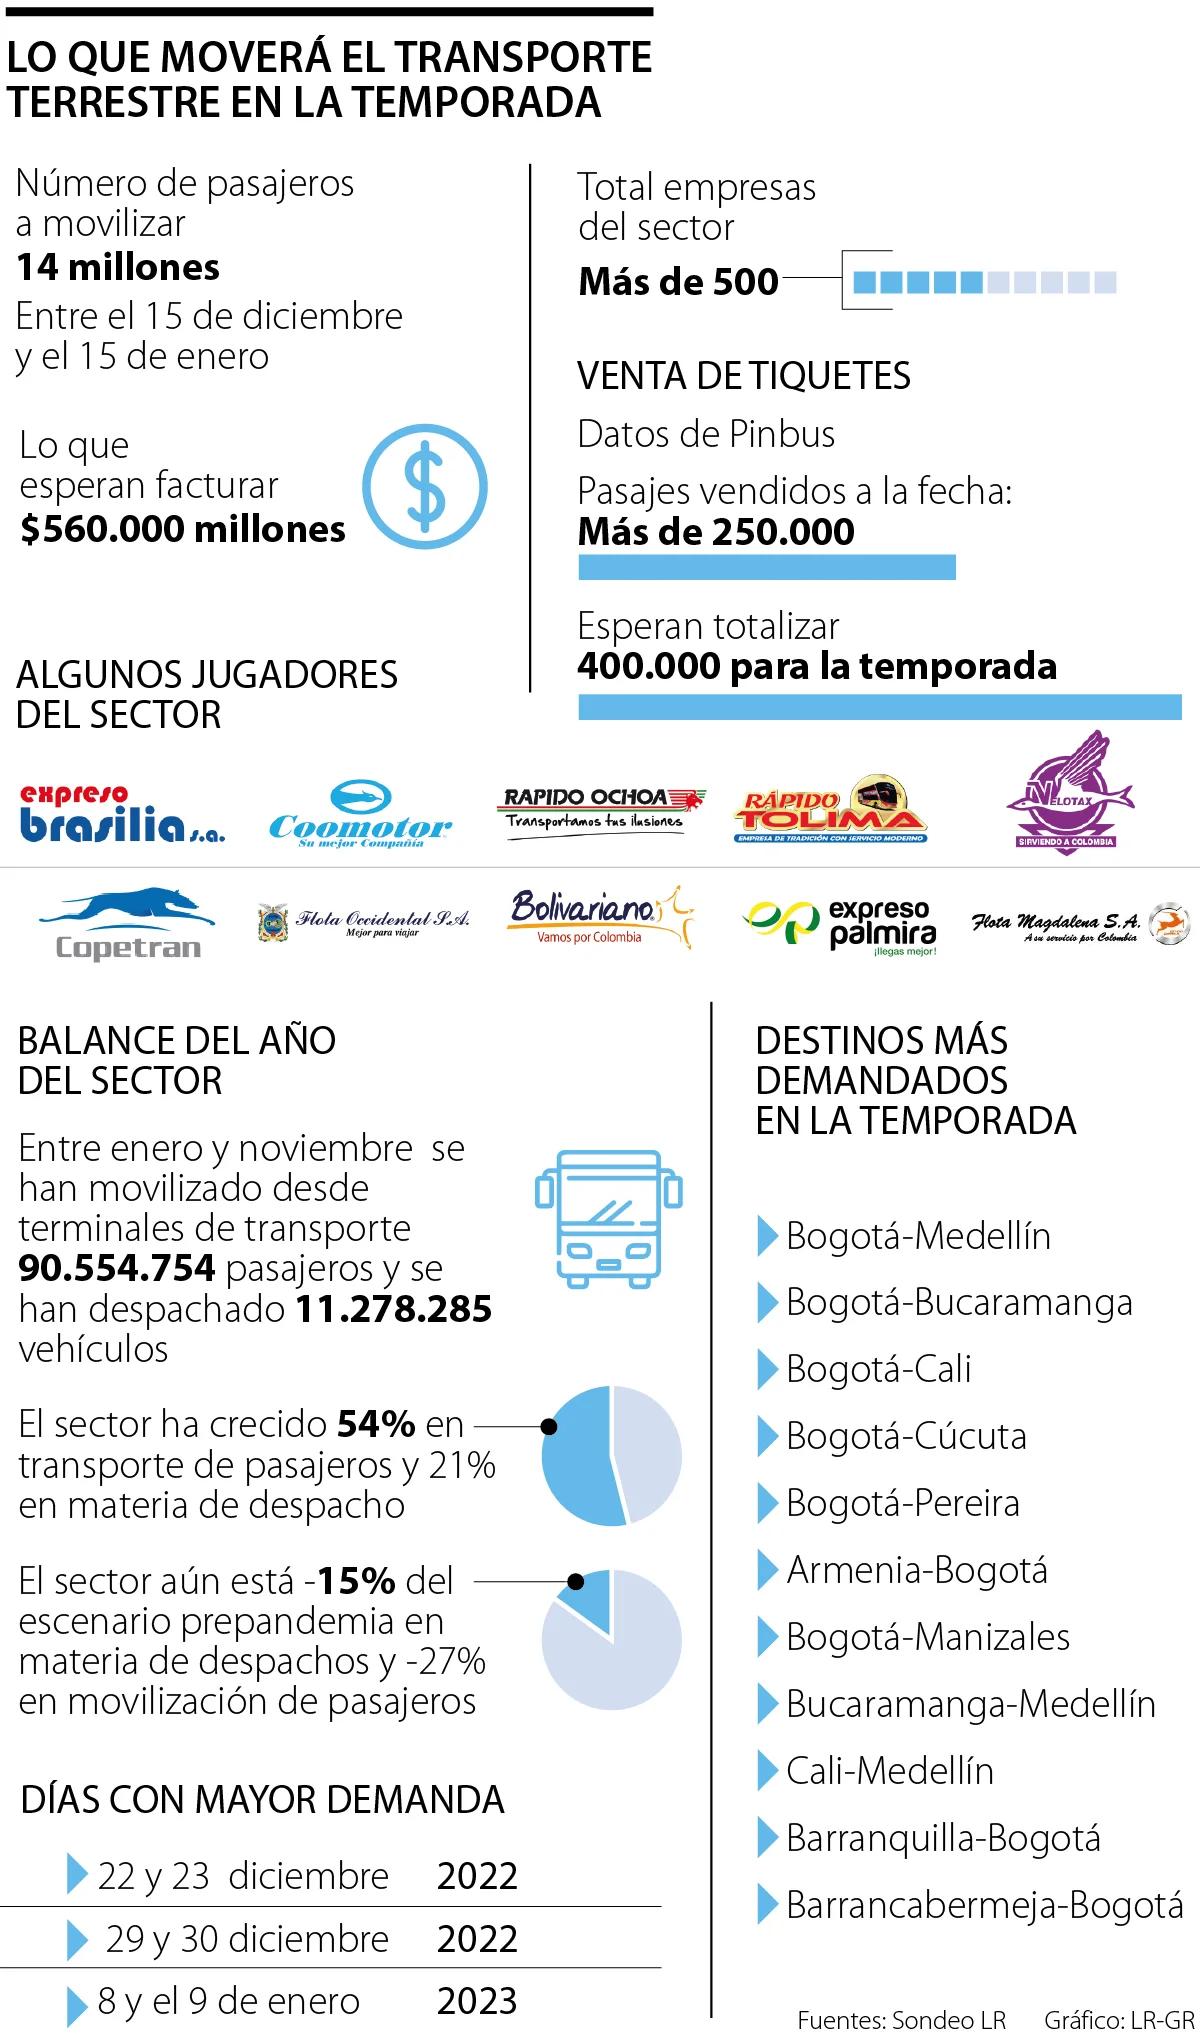 precio flete terrestre barranquilla bogota - Cuánto cuesta el pasaje de Barranquilla a Bogotá en bus Brasilia